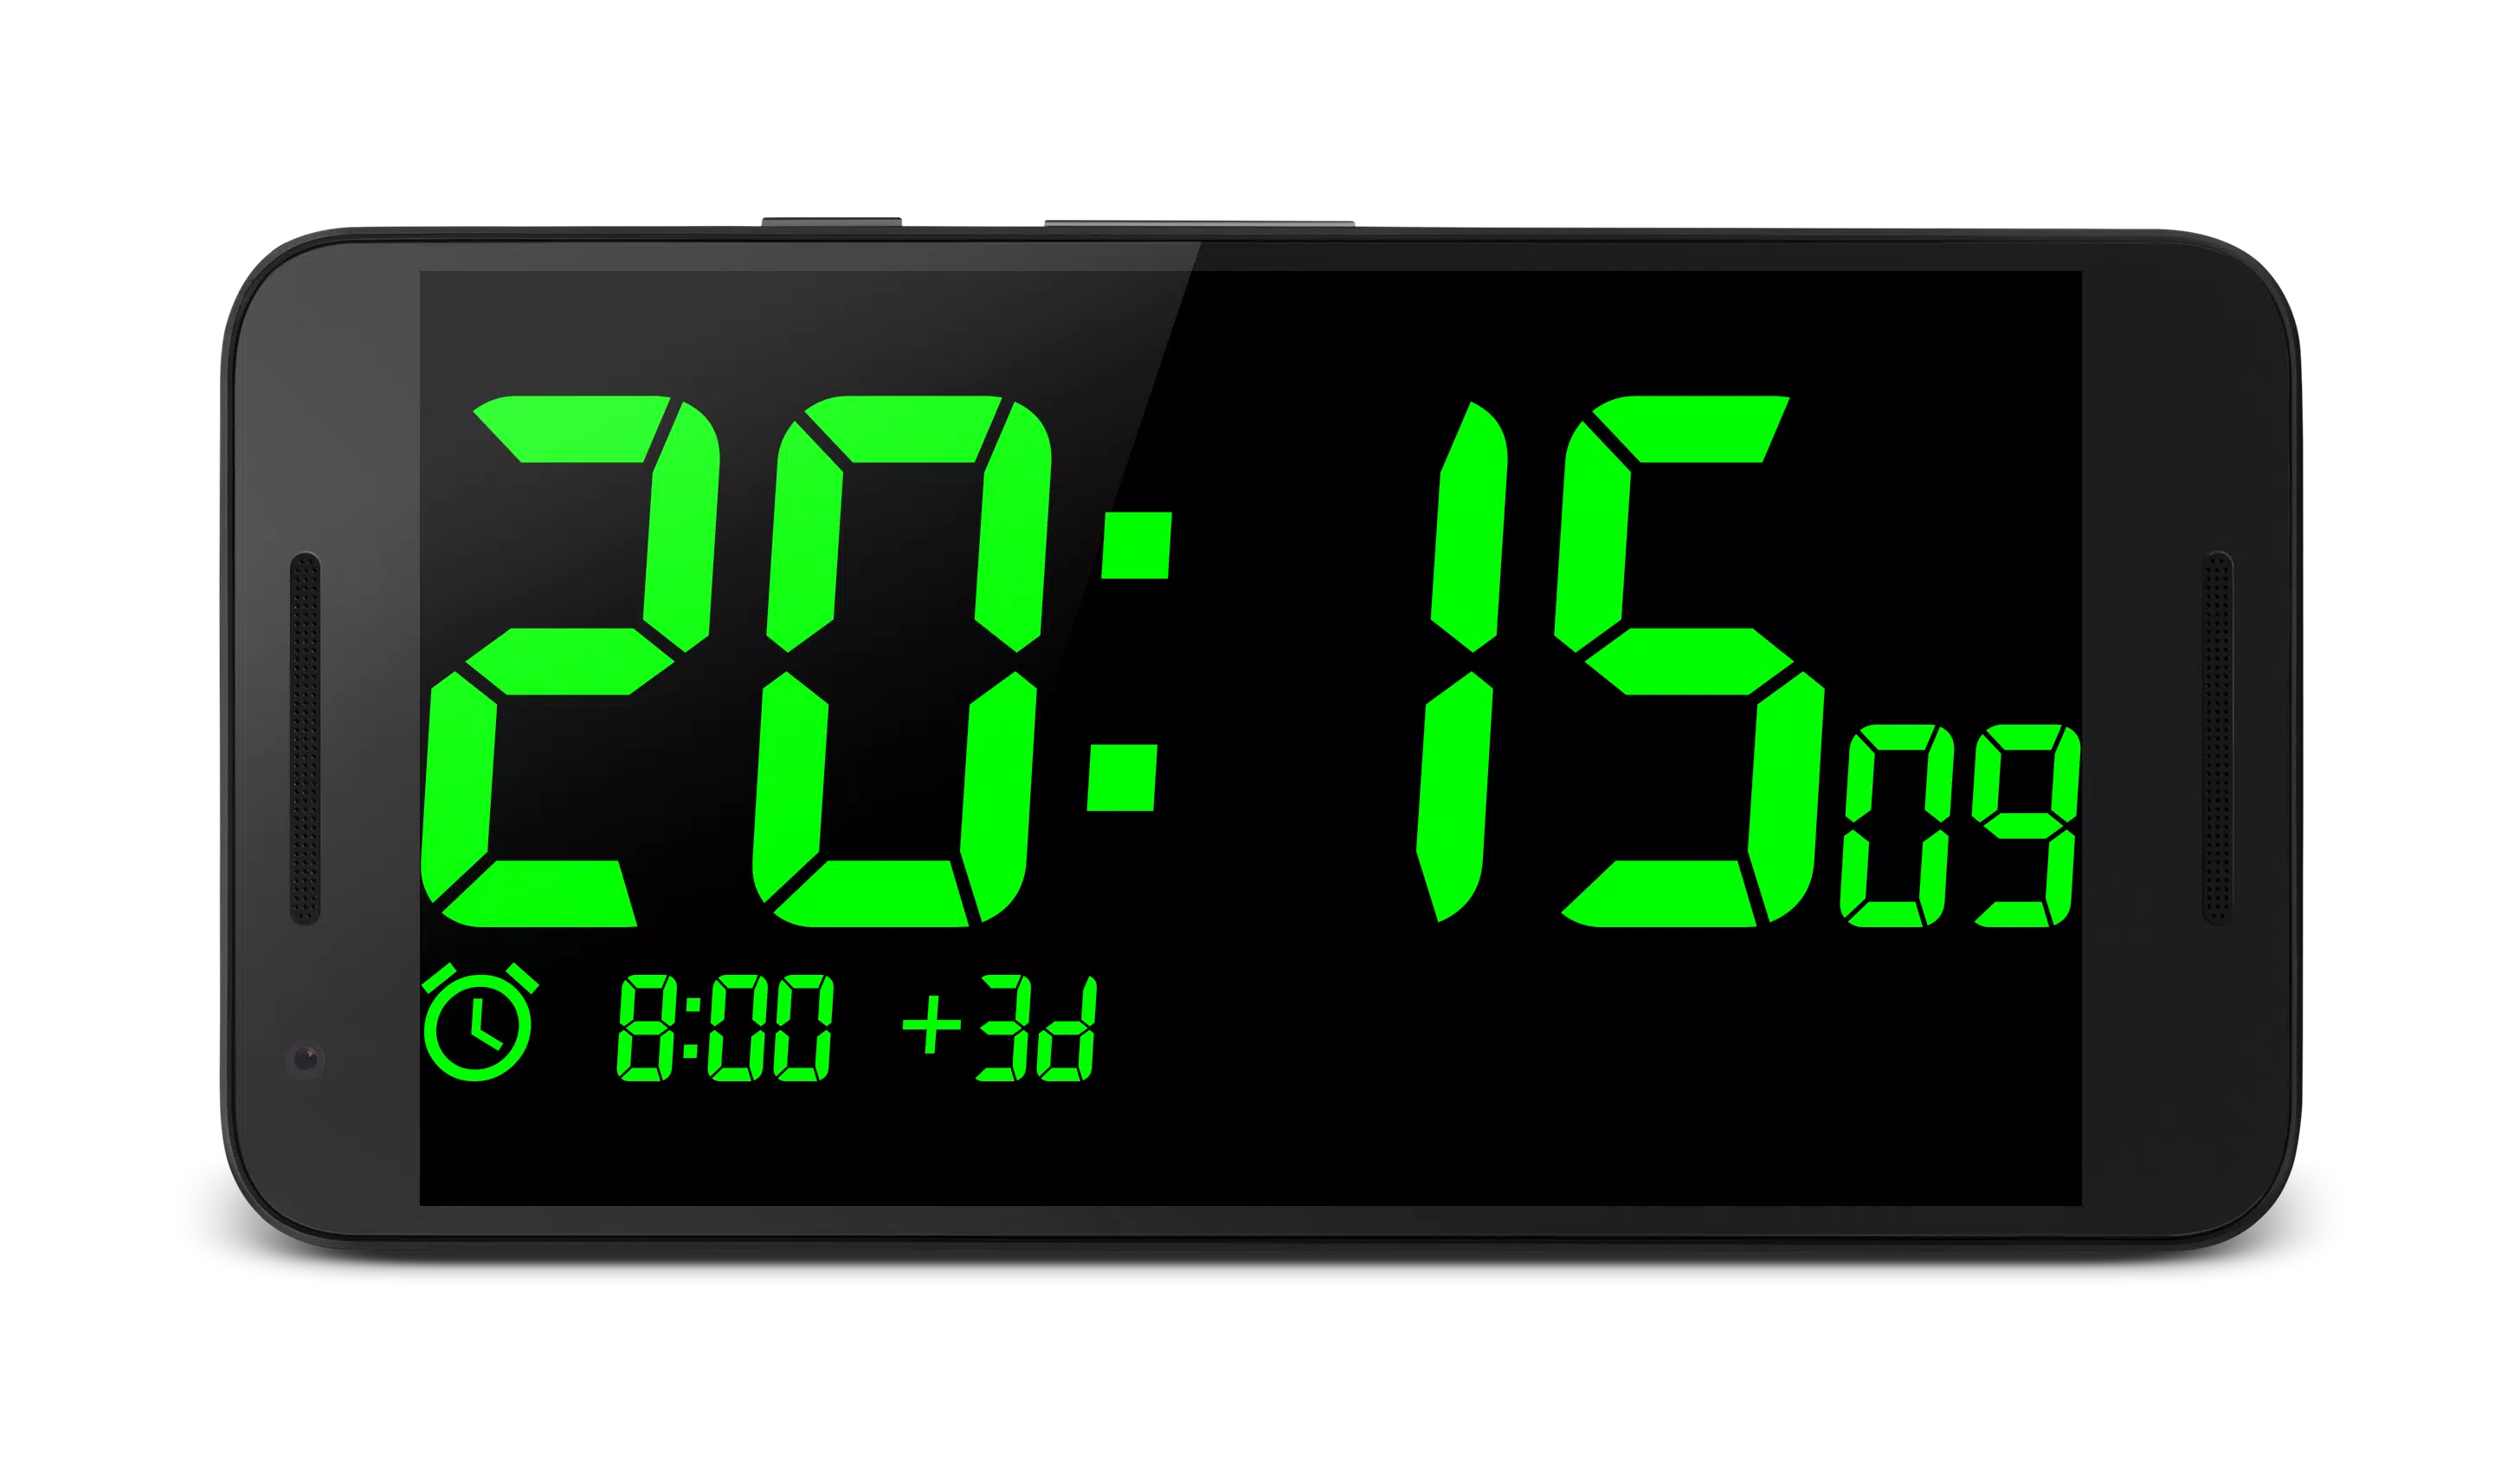 Картинка электронных часов. Часы Digital Clock 200730138828.4. Цифровые часы. Электронные цифровые часы для андроид. Электрические часы.